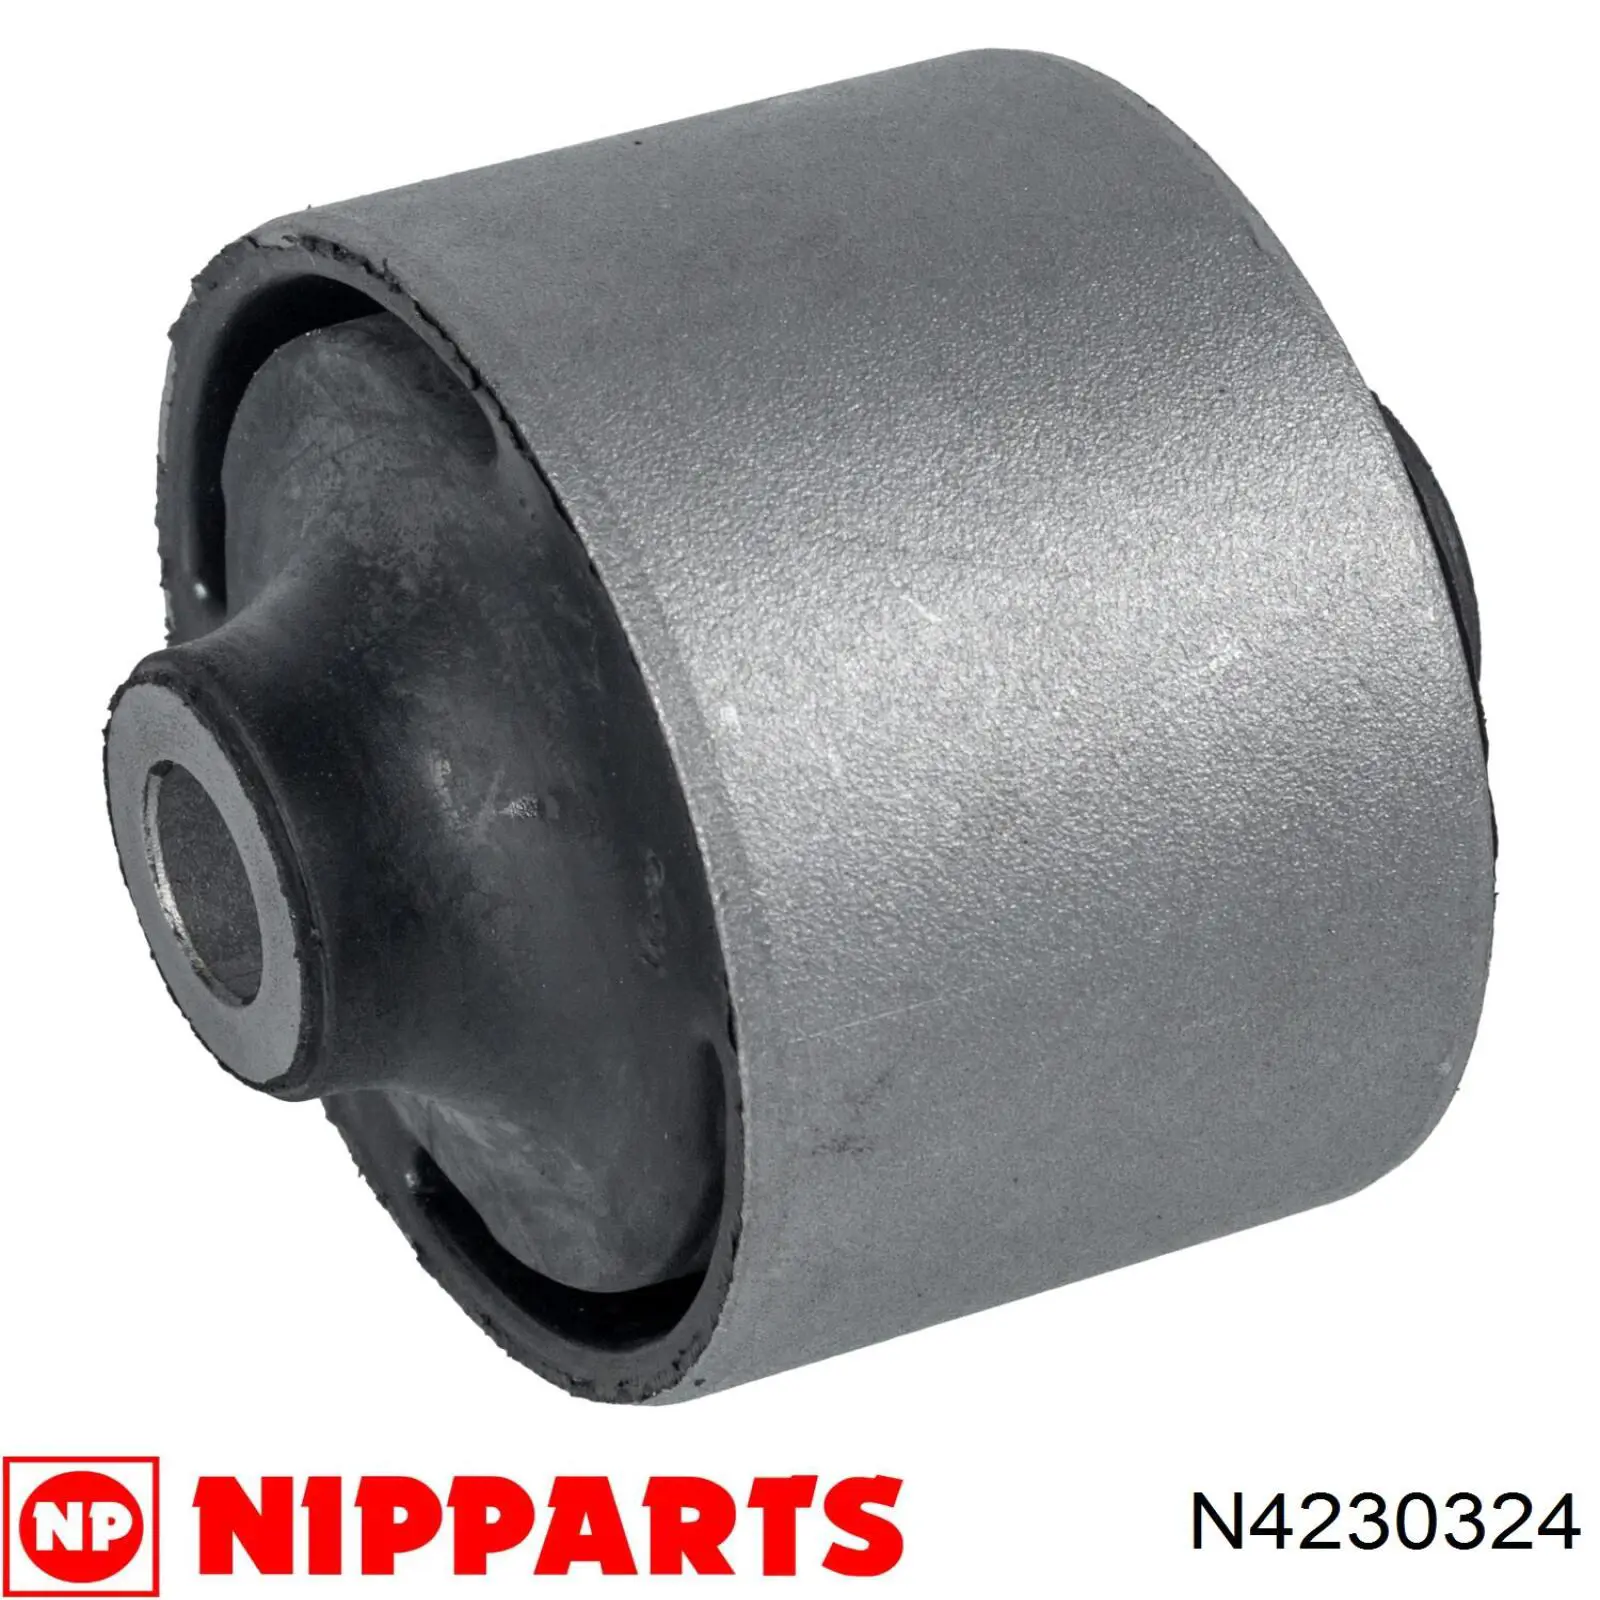 N4230324 Nipparts silentblock de suspensión delantero inferior